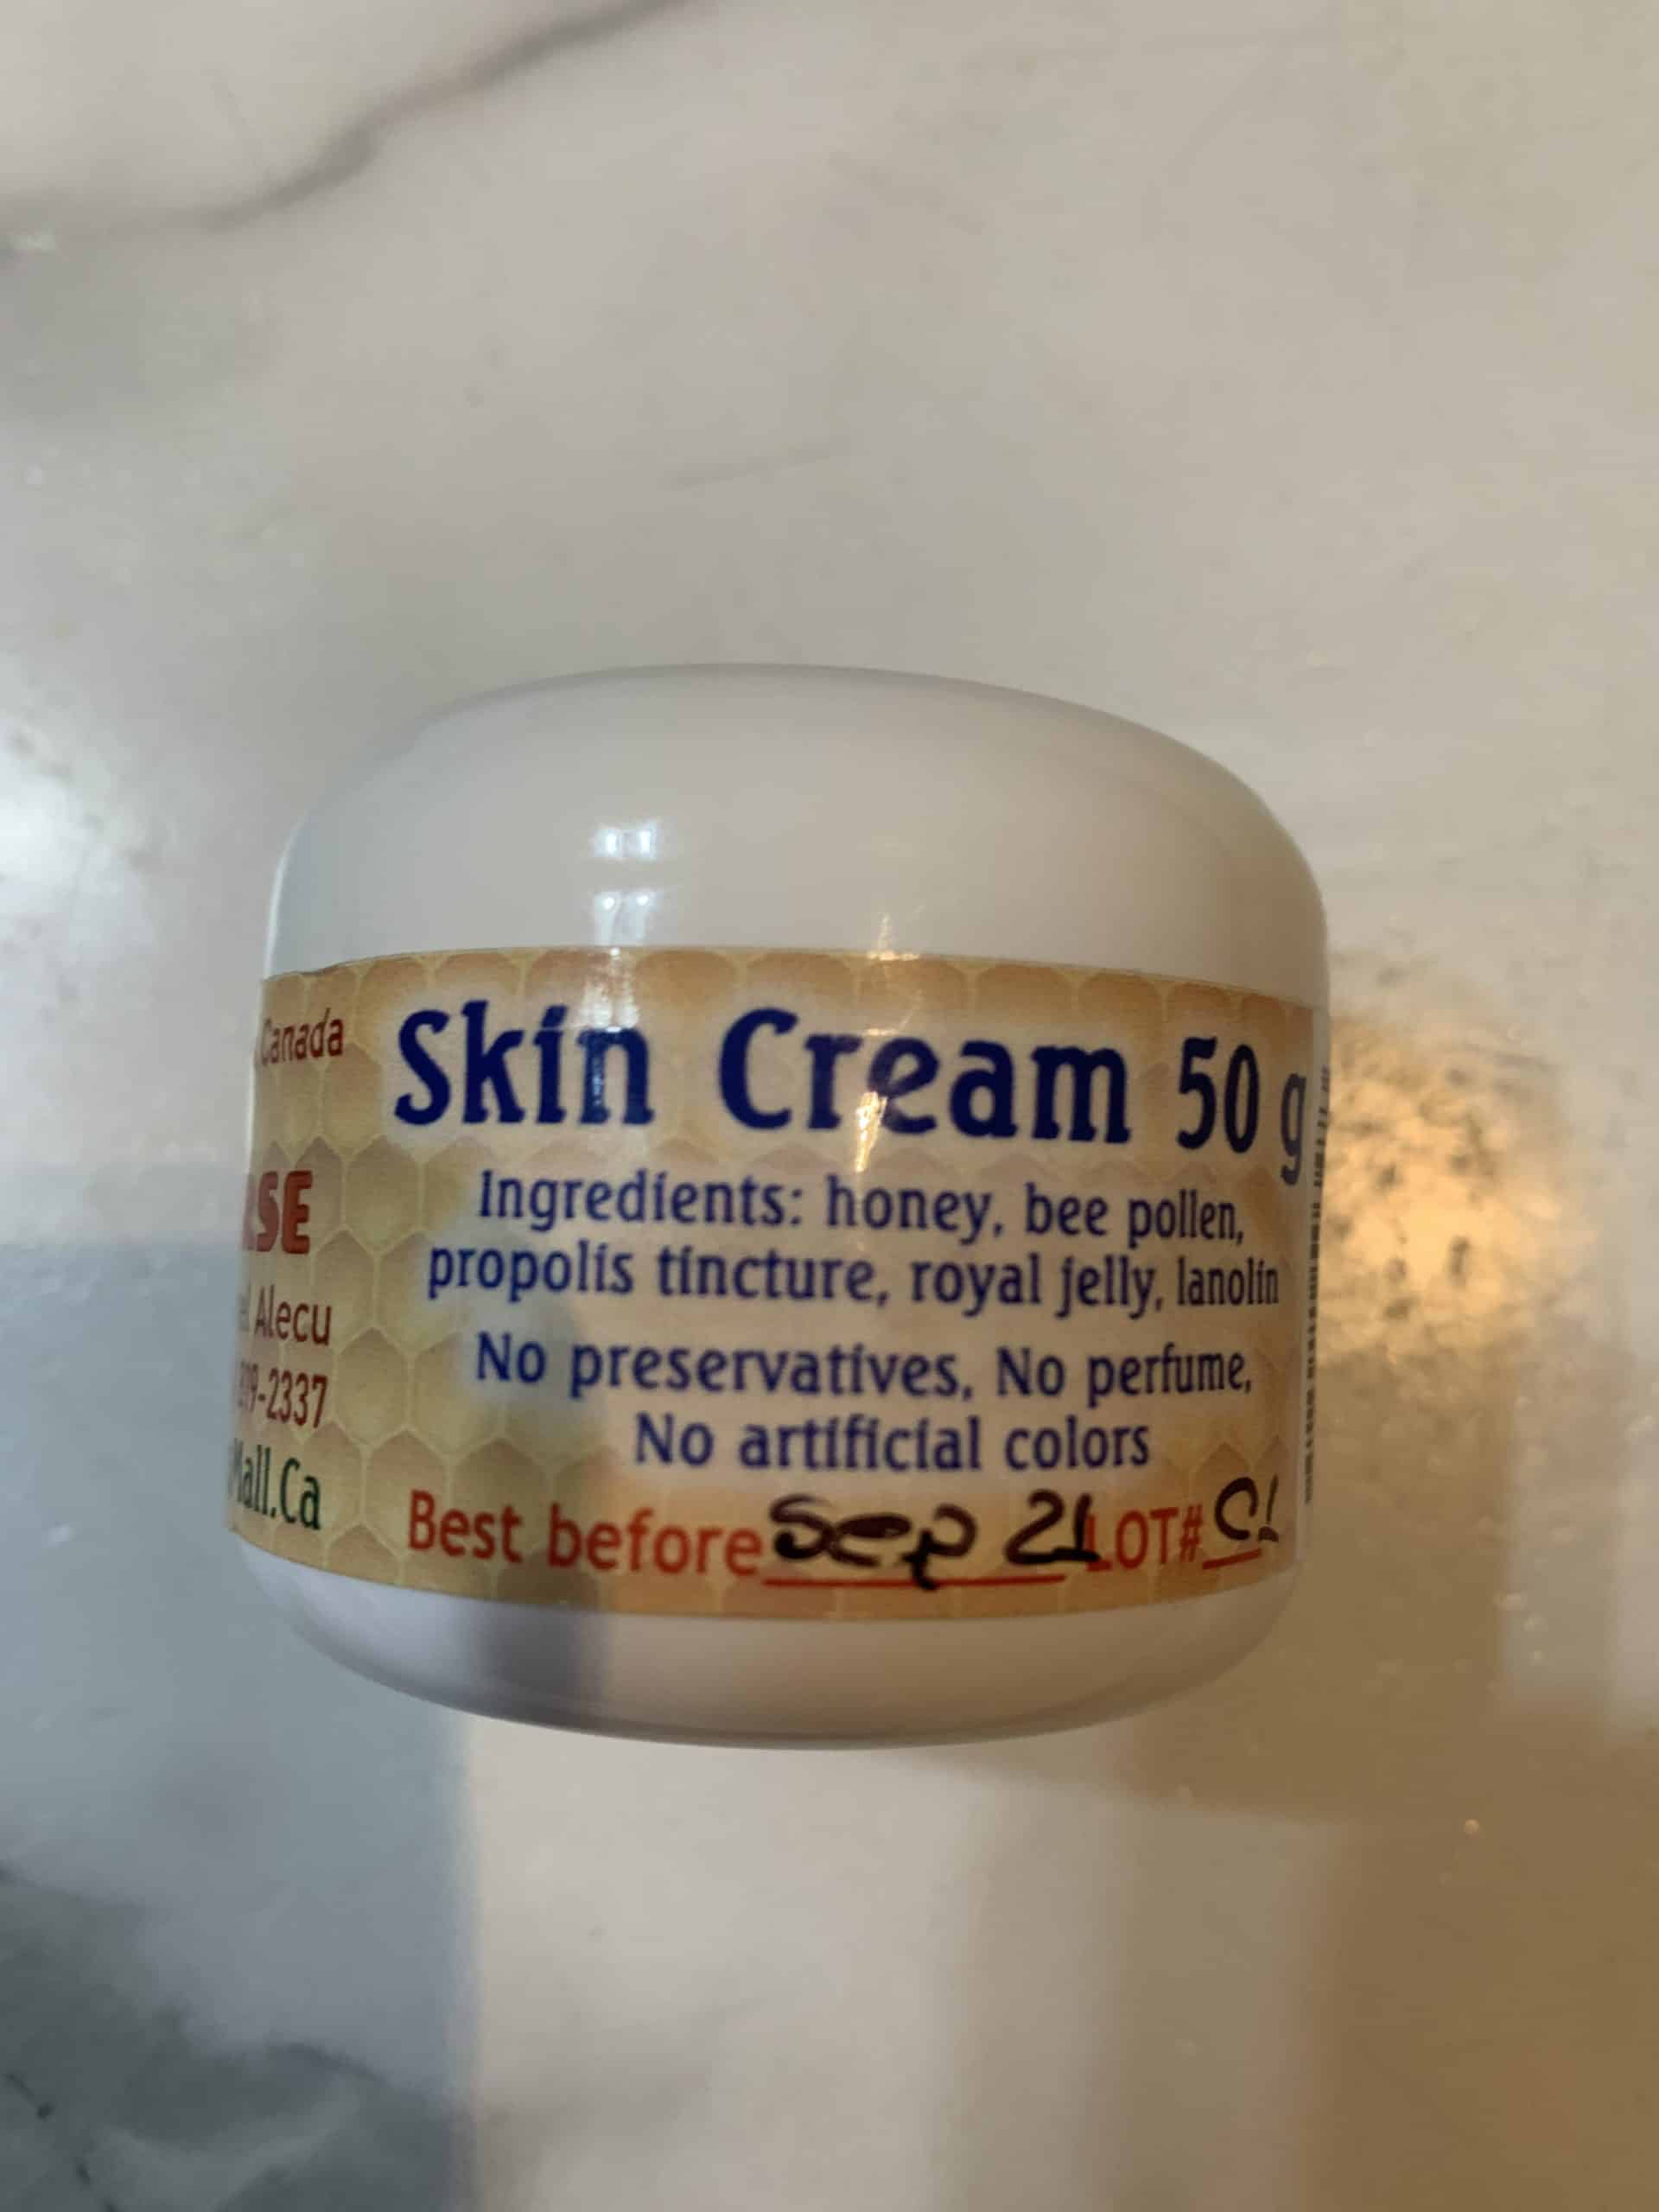 Skin cream 50g